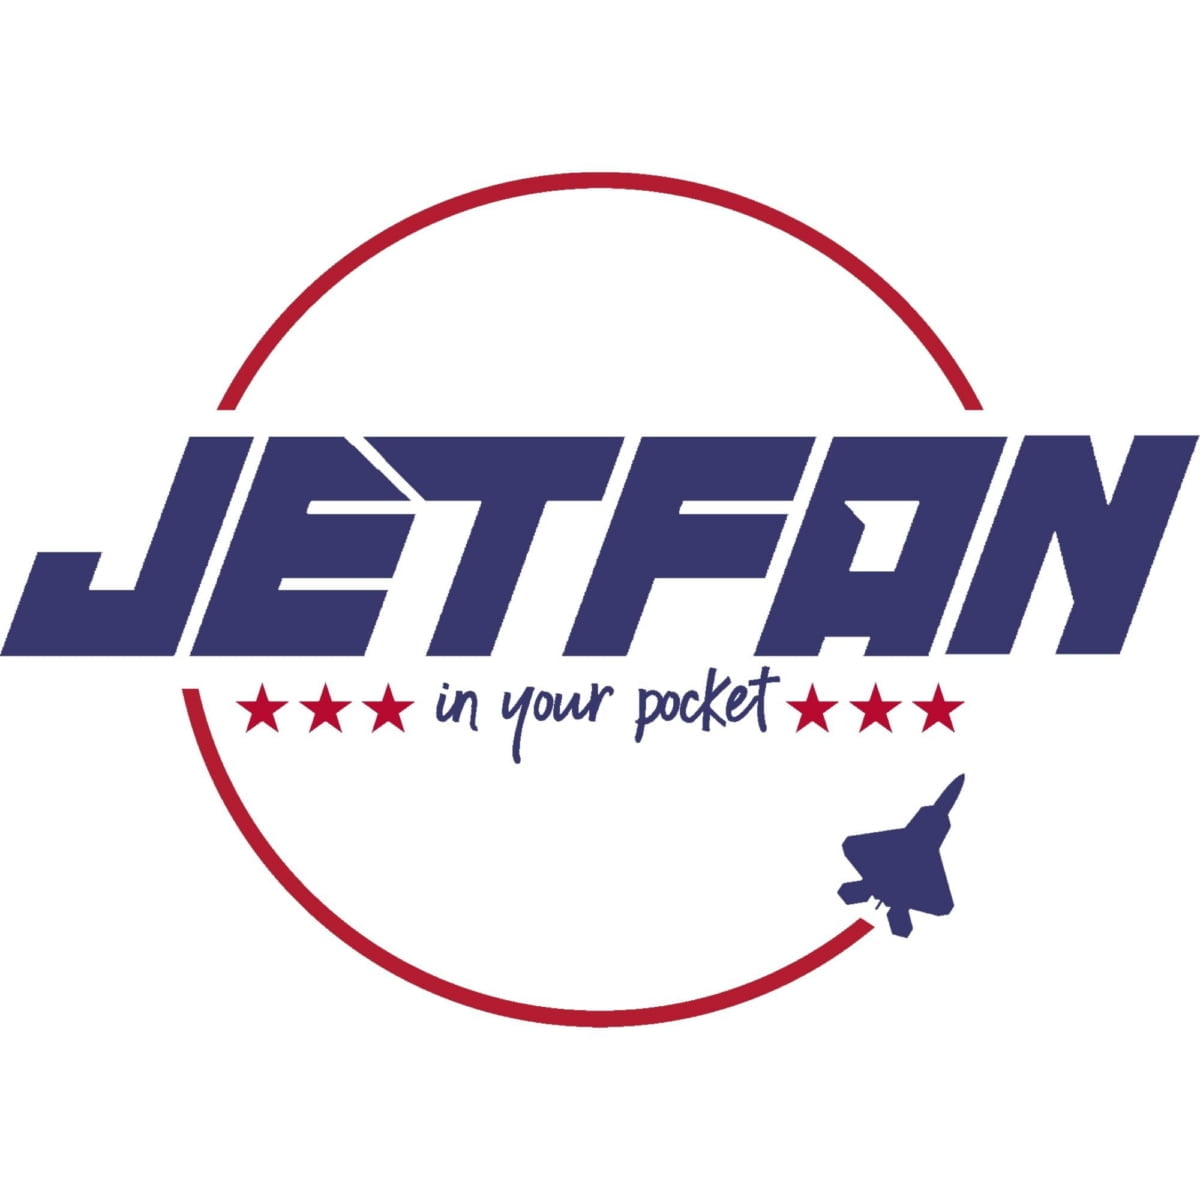 제트팬코리아, 미국 JETFAN과 정식 라이선스 계약 체결...'제트팬 Mini X1' 출시